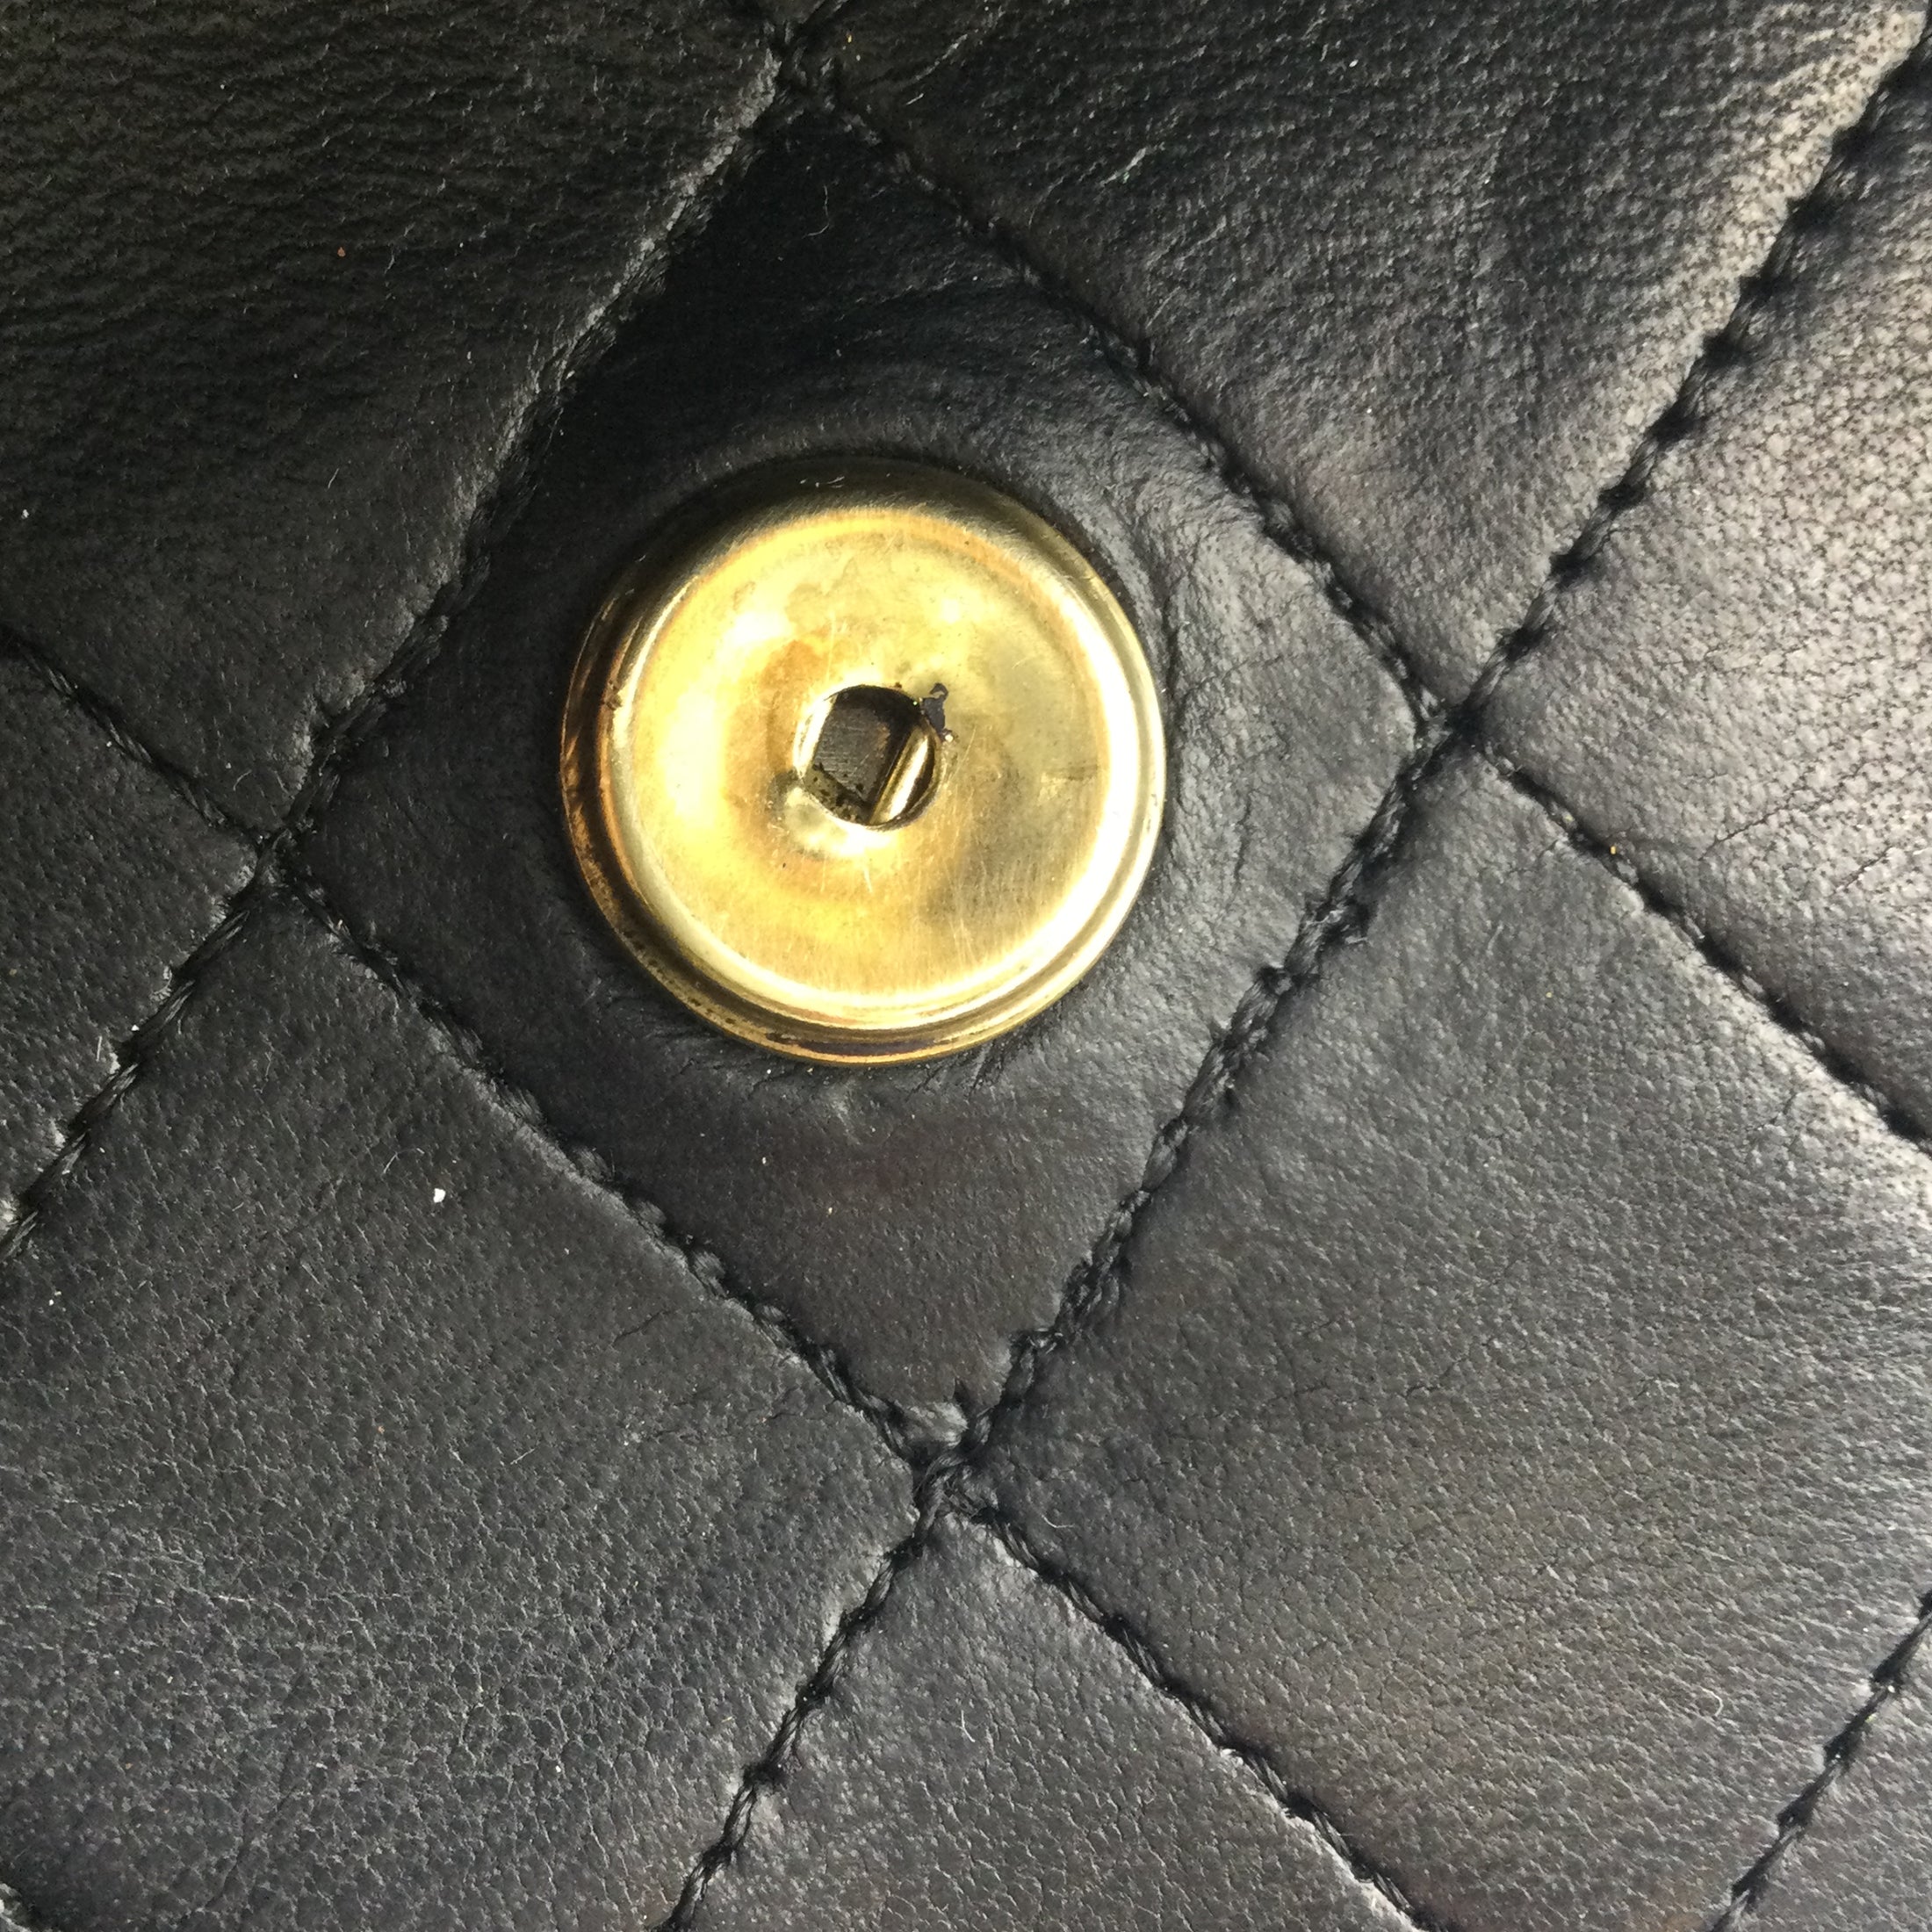 Chanel Classic Vintage Flap Black Lambskin Leather Shoulder Bag